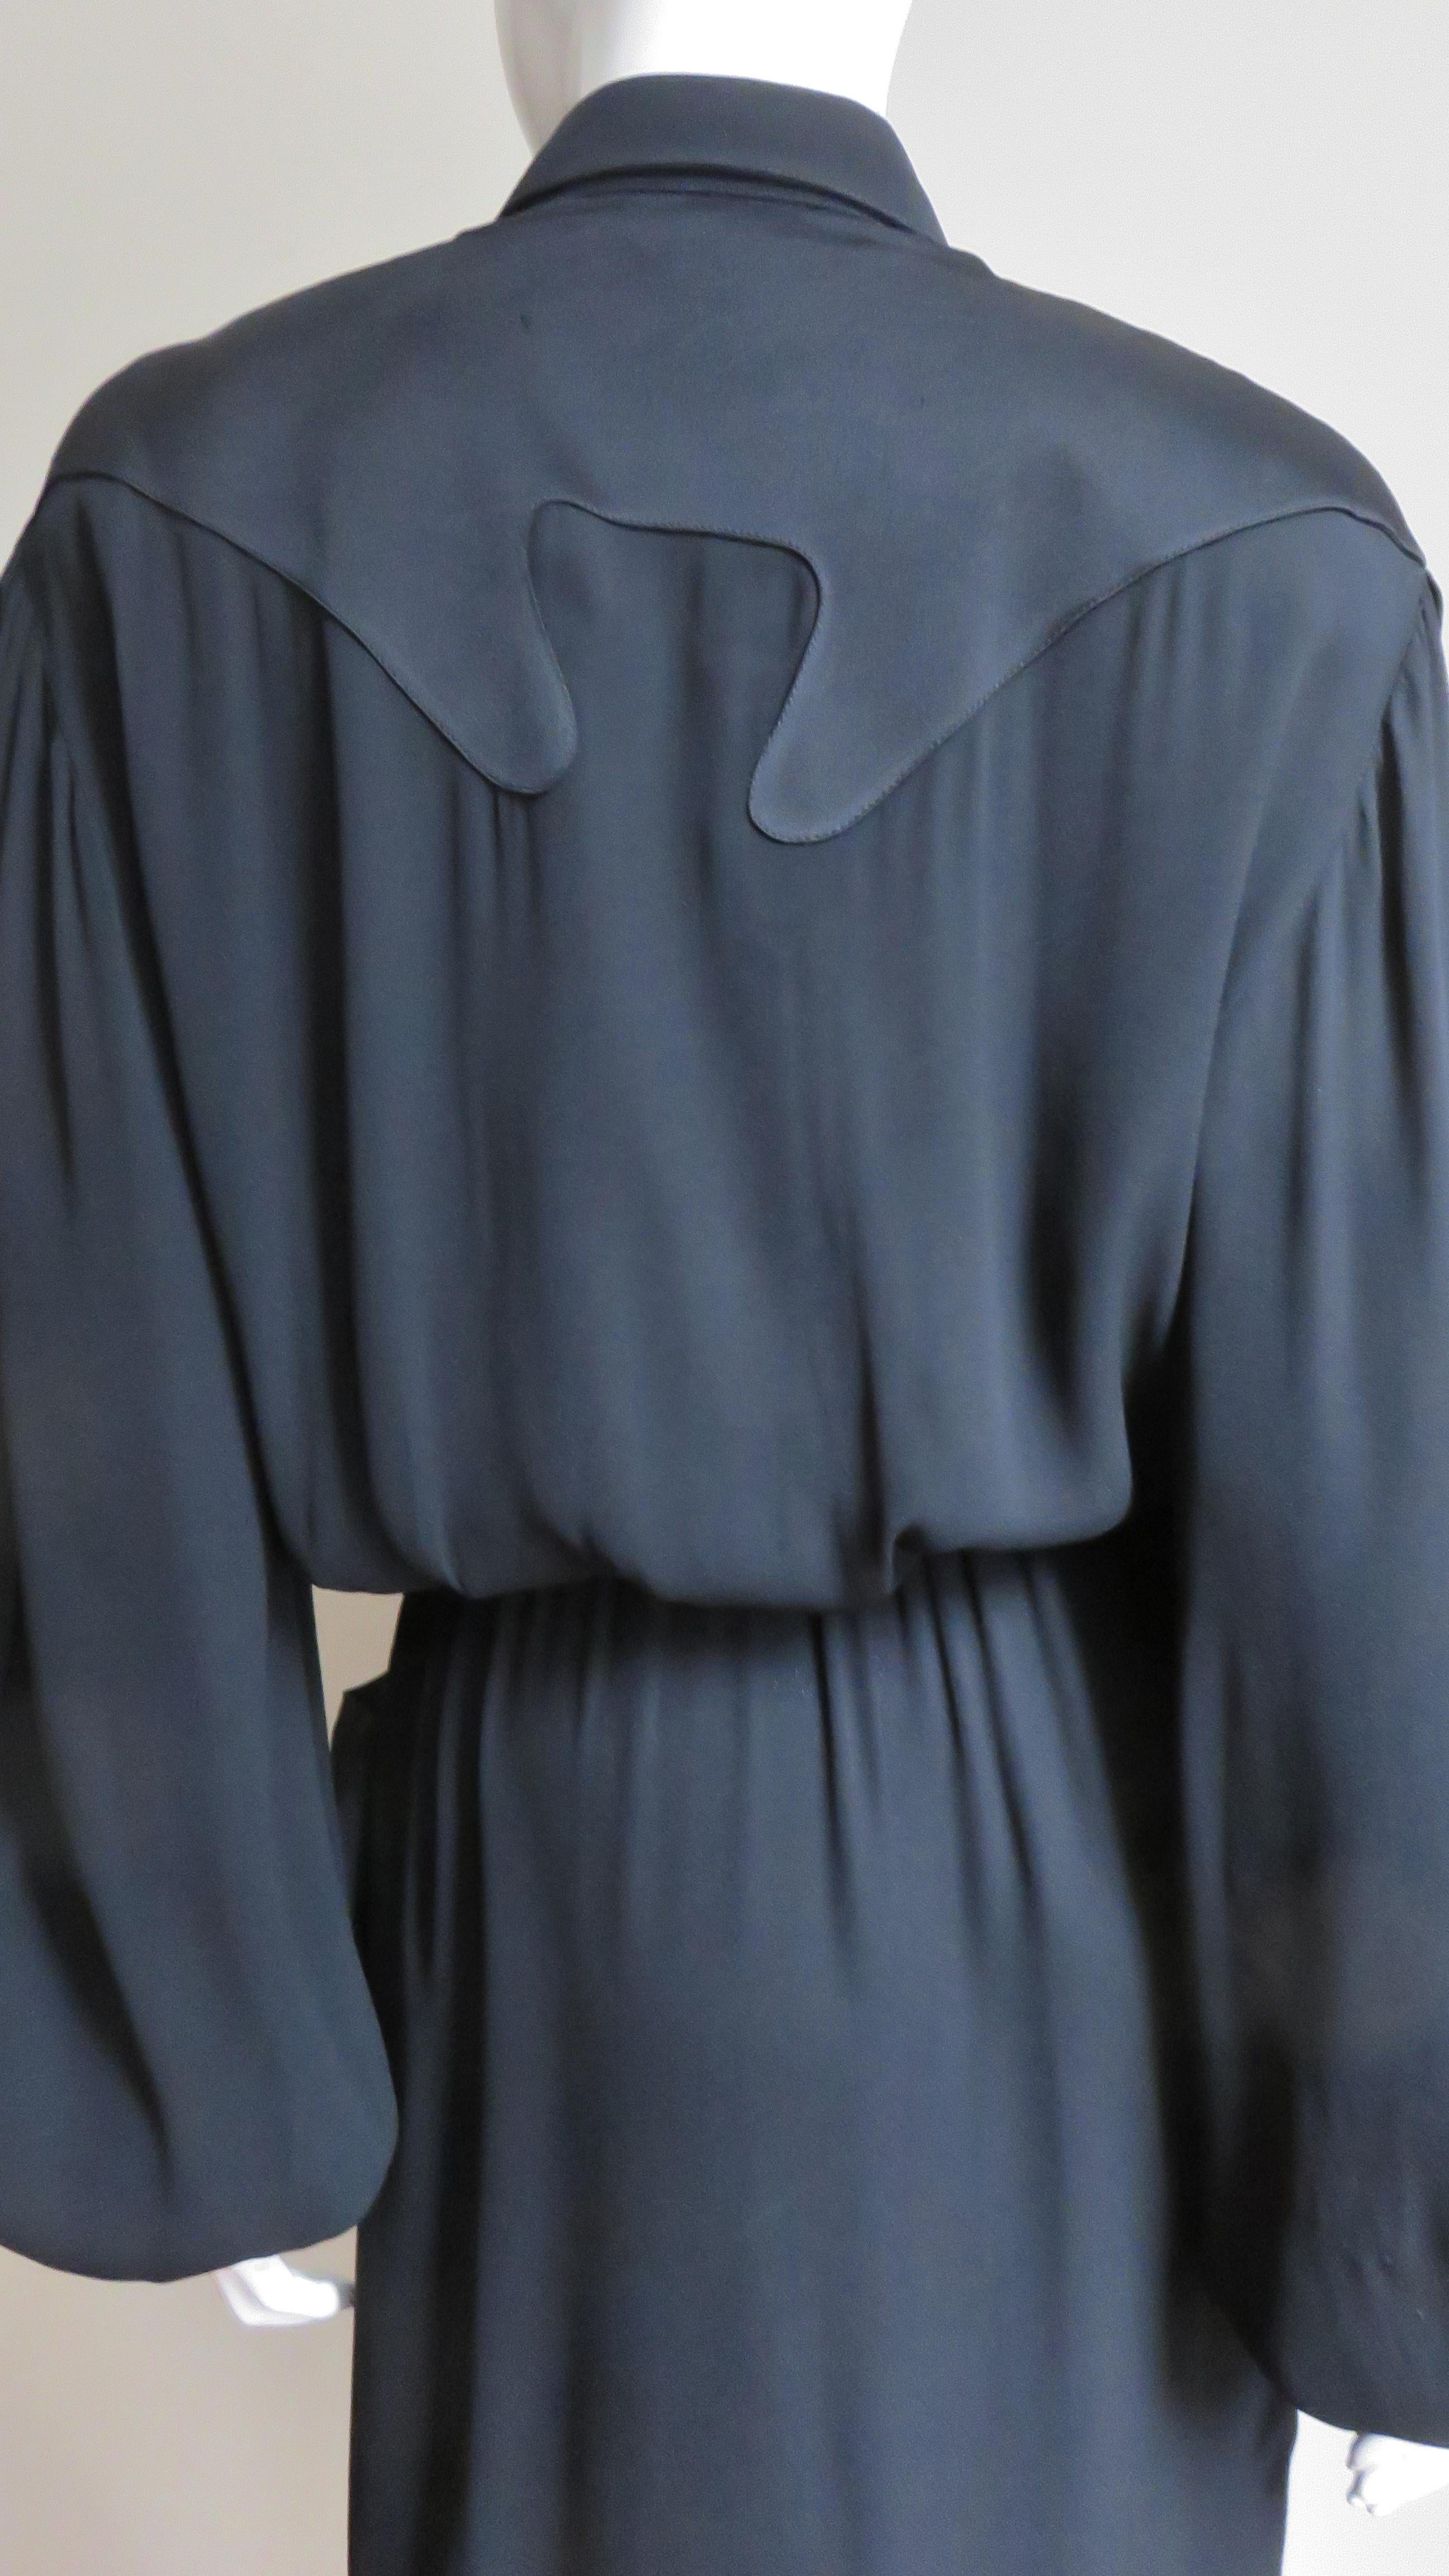 Thierry Mugler Western Influence Shirtwaist Dress For Sale 6